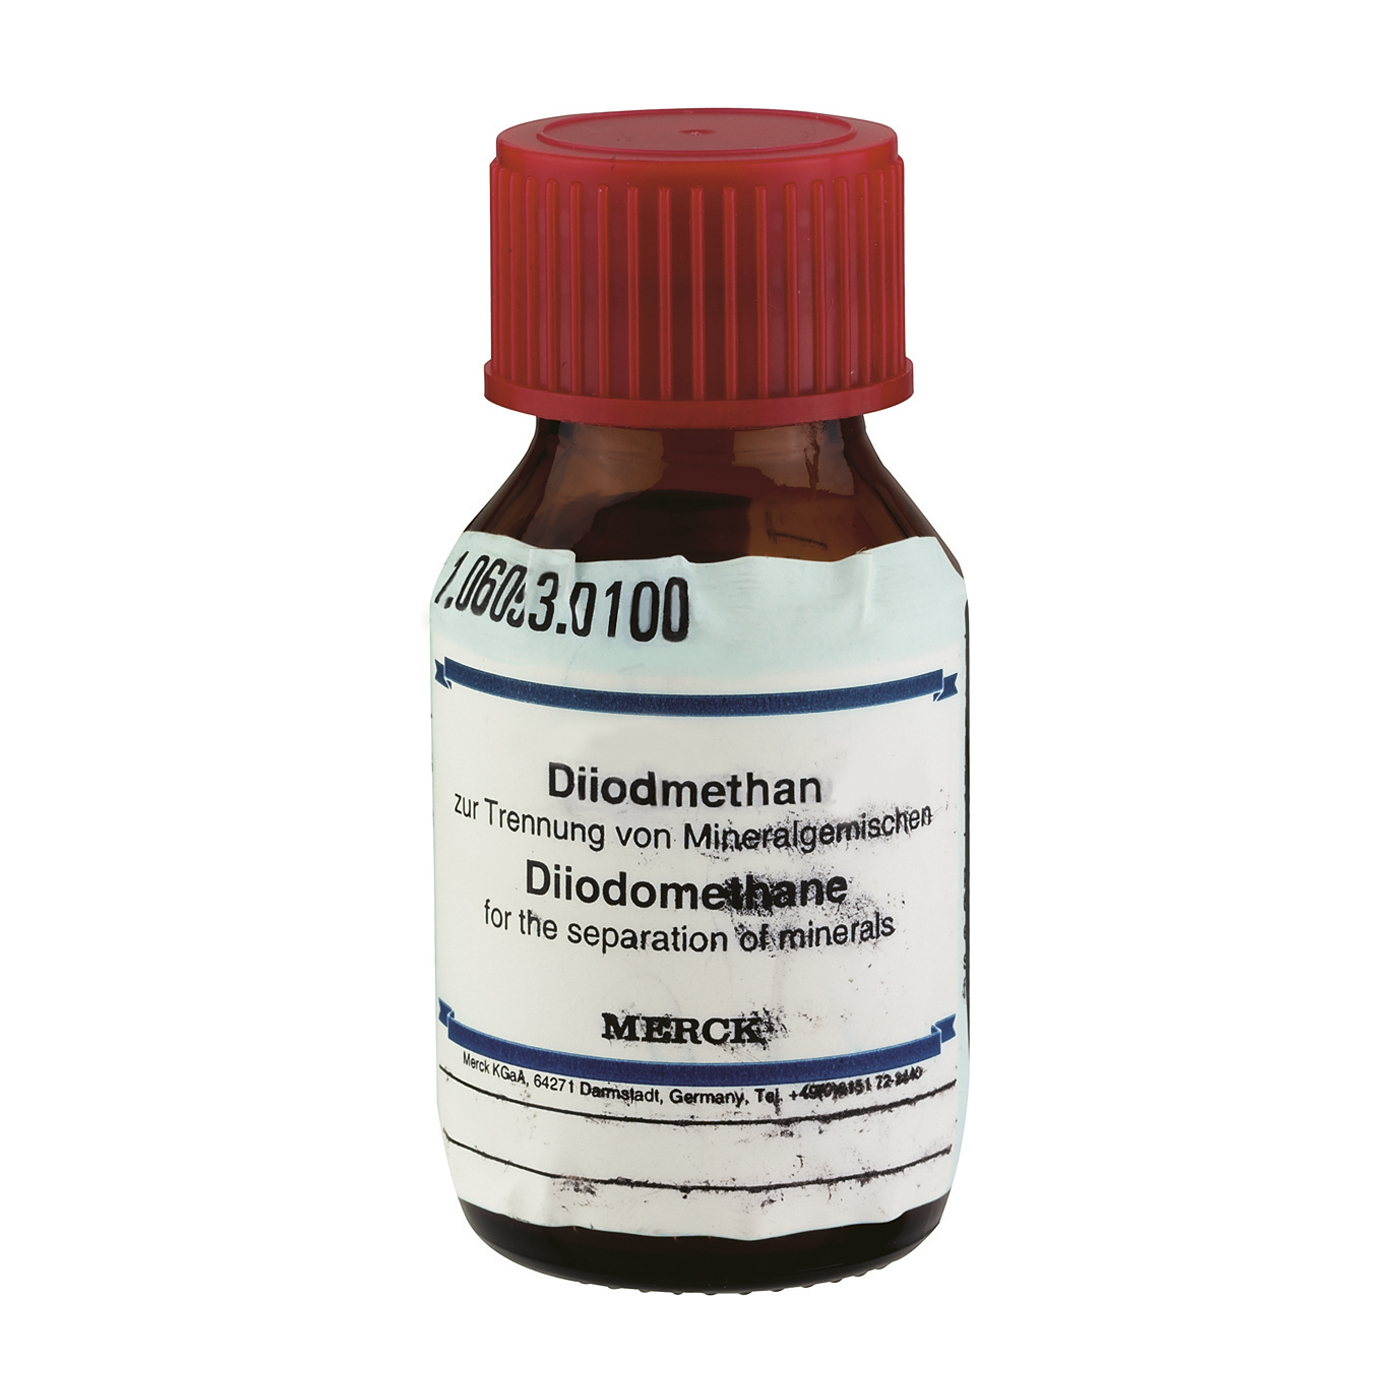 MJ10 Diiodomethane - 50 g